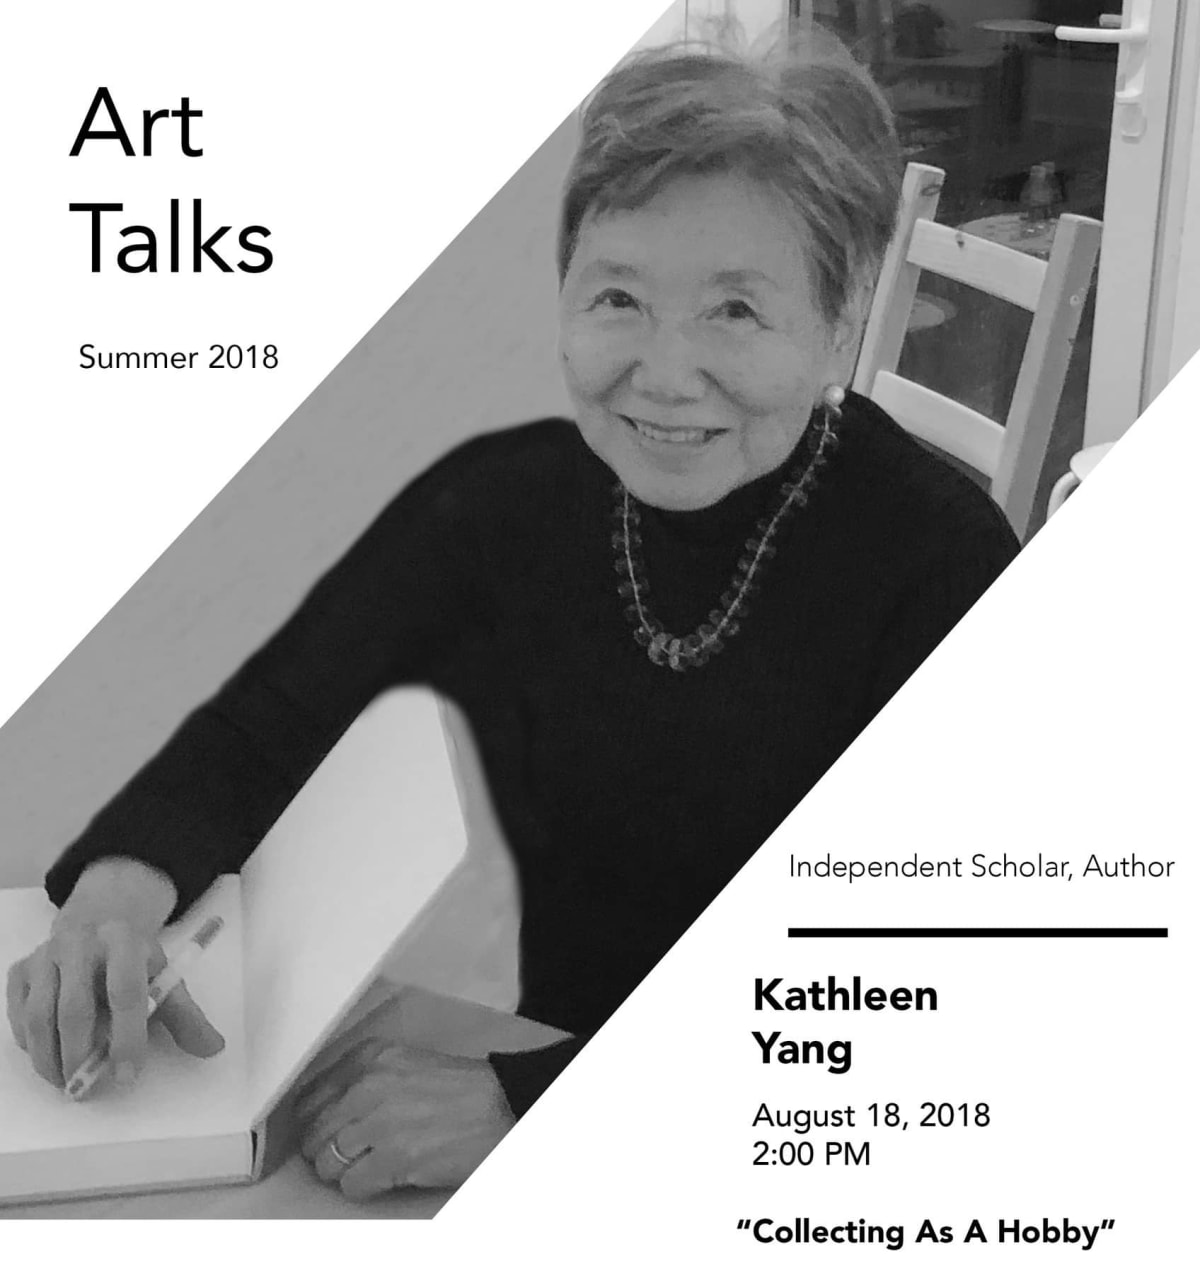 Poster of Kathleen Yang's art talk